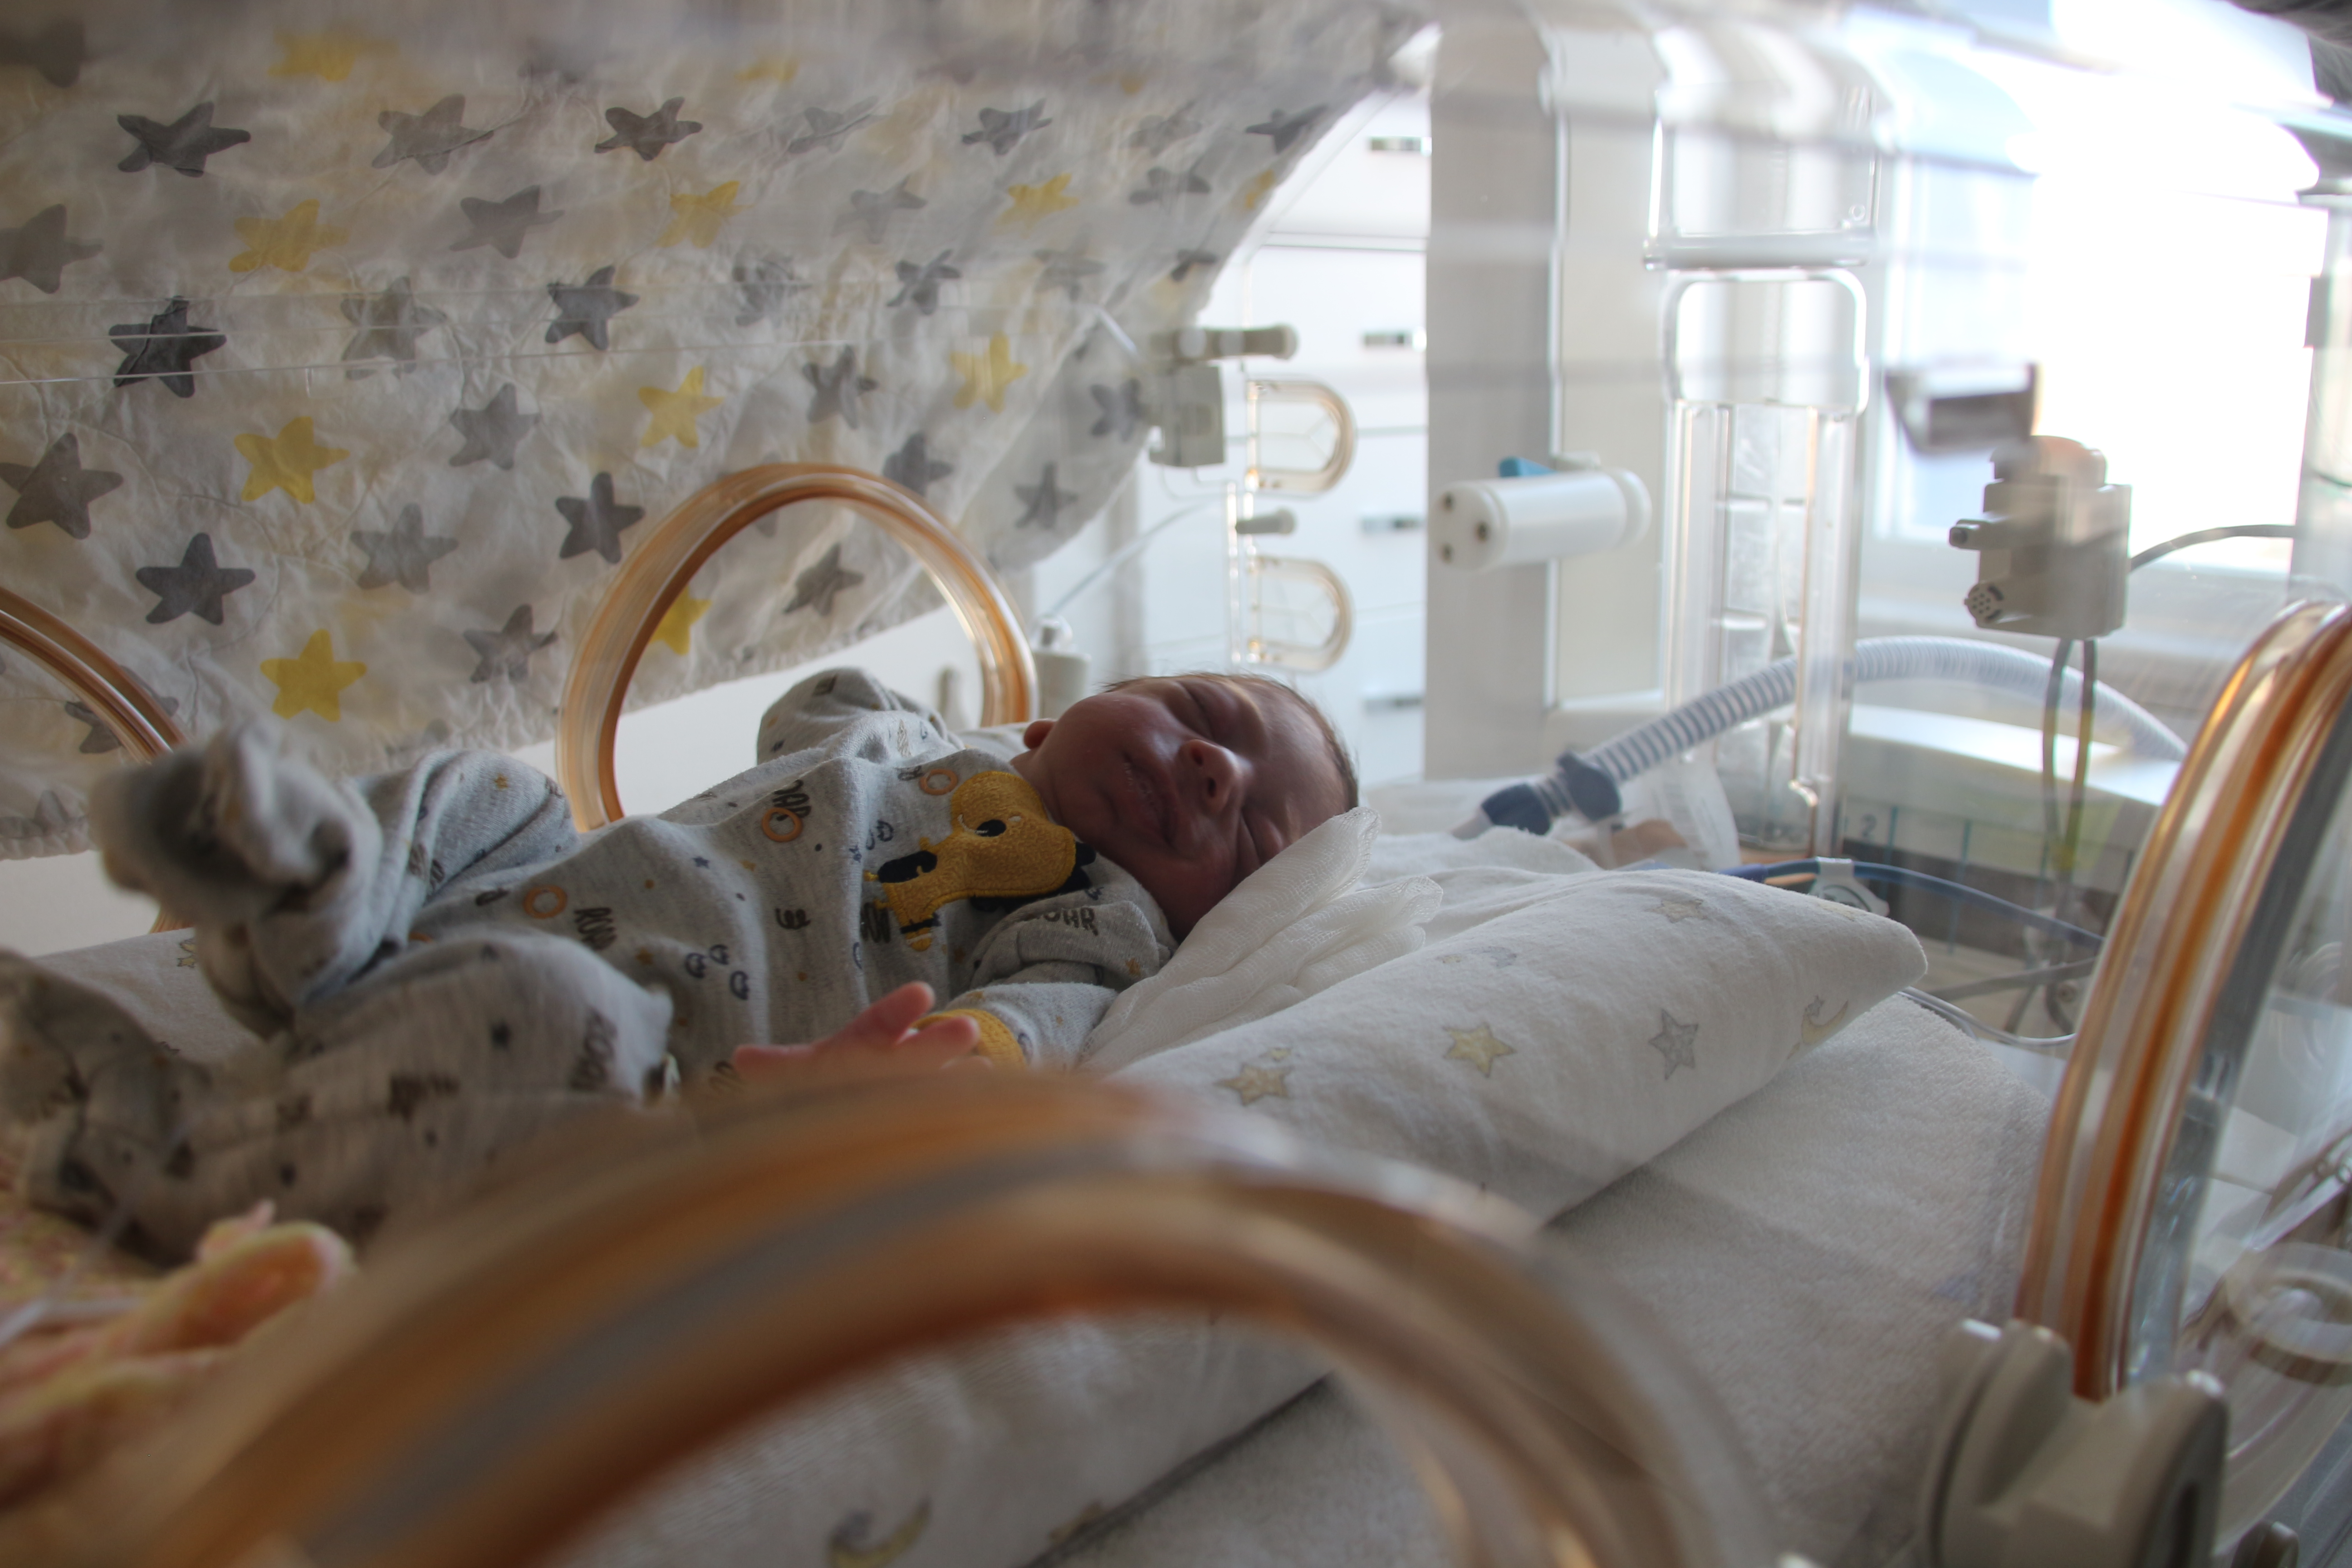 Türk doktorların müdahalesi kalp hastası Suriyeli bebeğin hayatını kurtardı